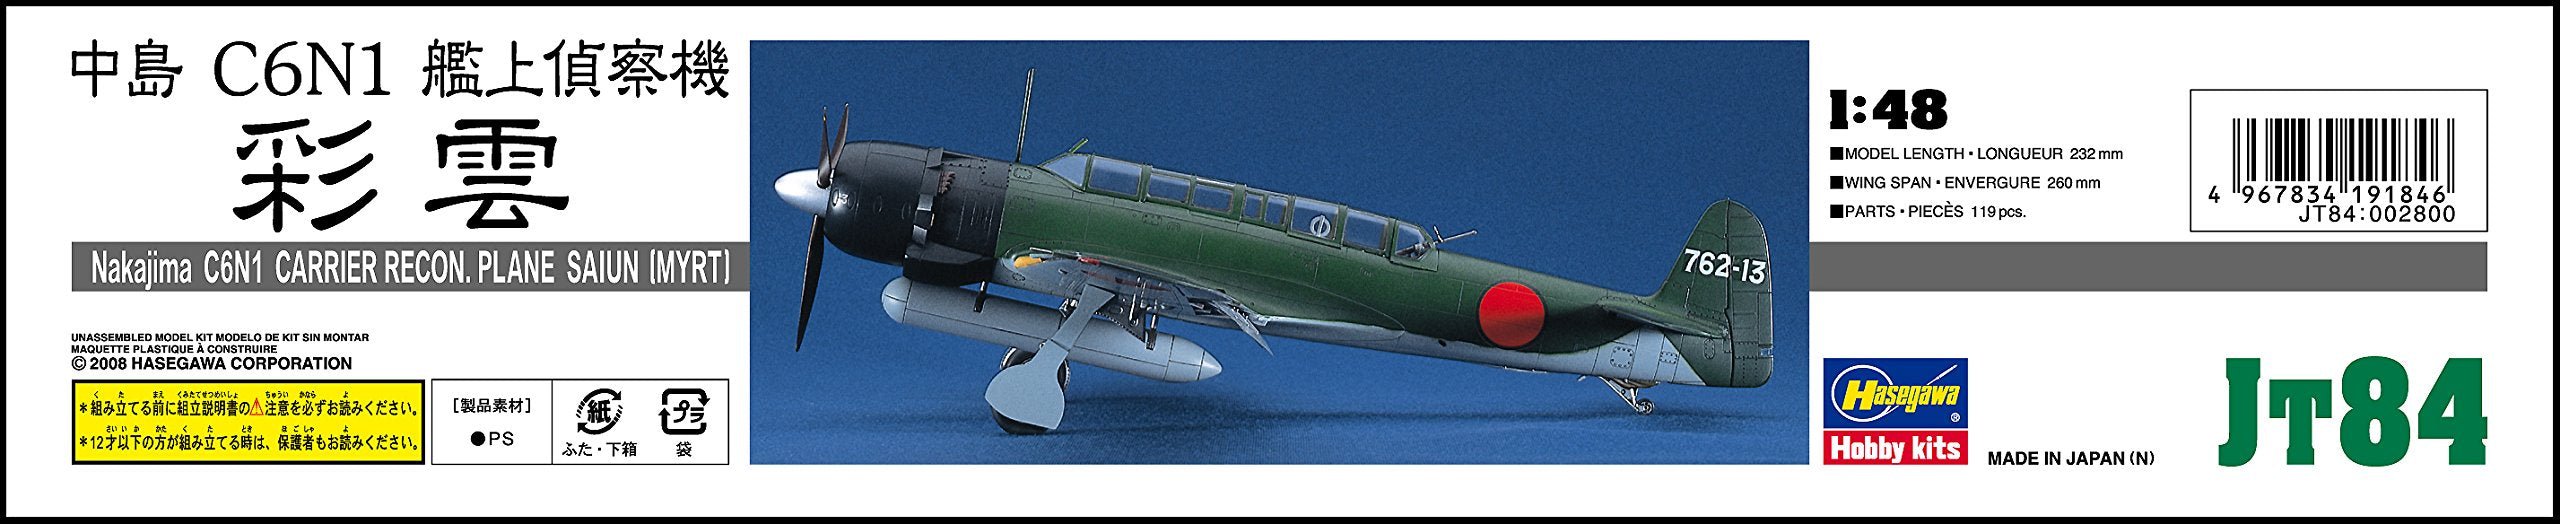 HASEGAWA 1/48 Nakajima C6M1 transporteur Recon. Modèle en plastique d'avion Saiun Myrt